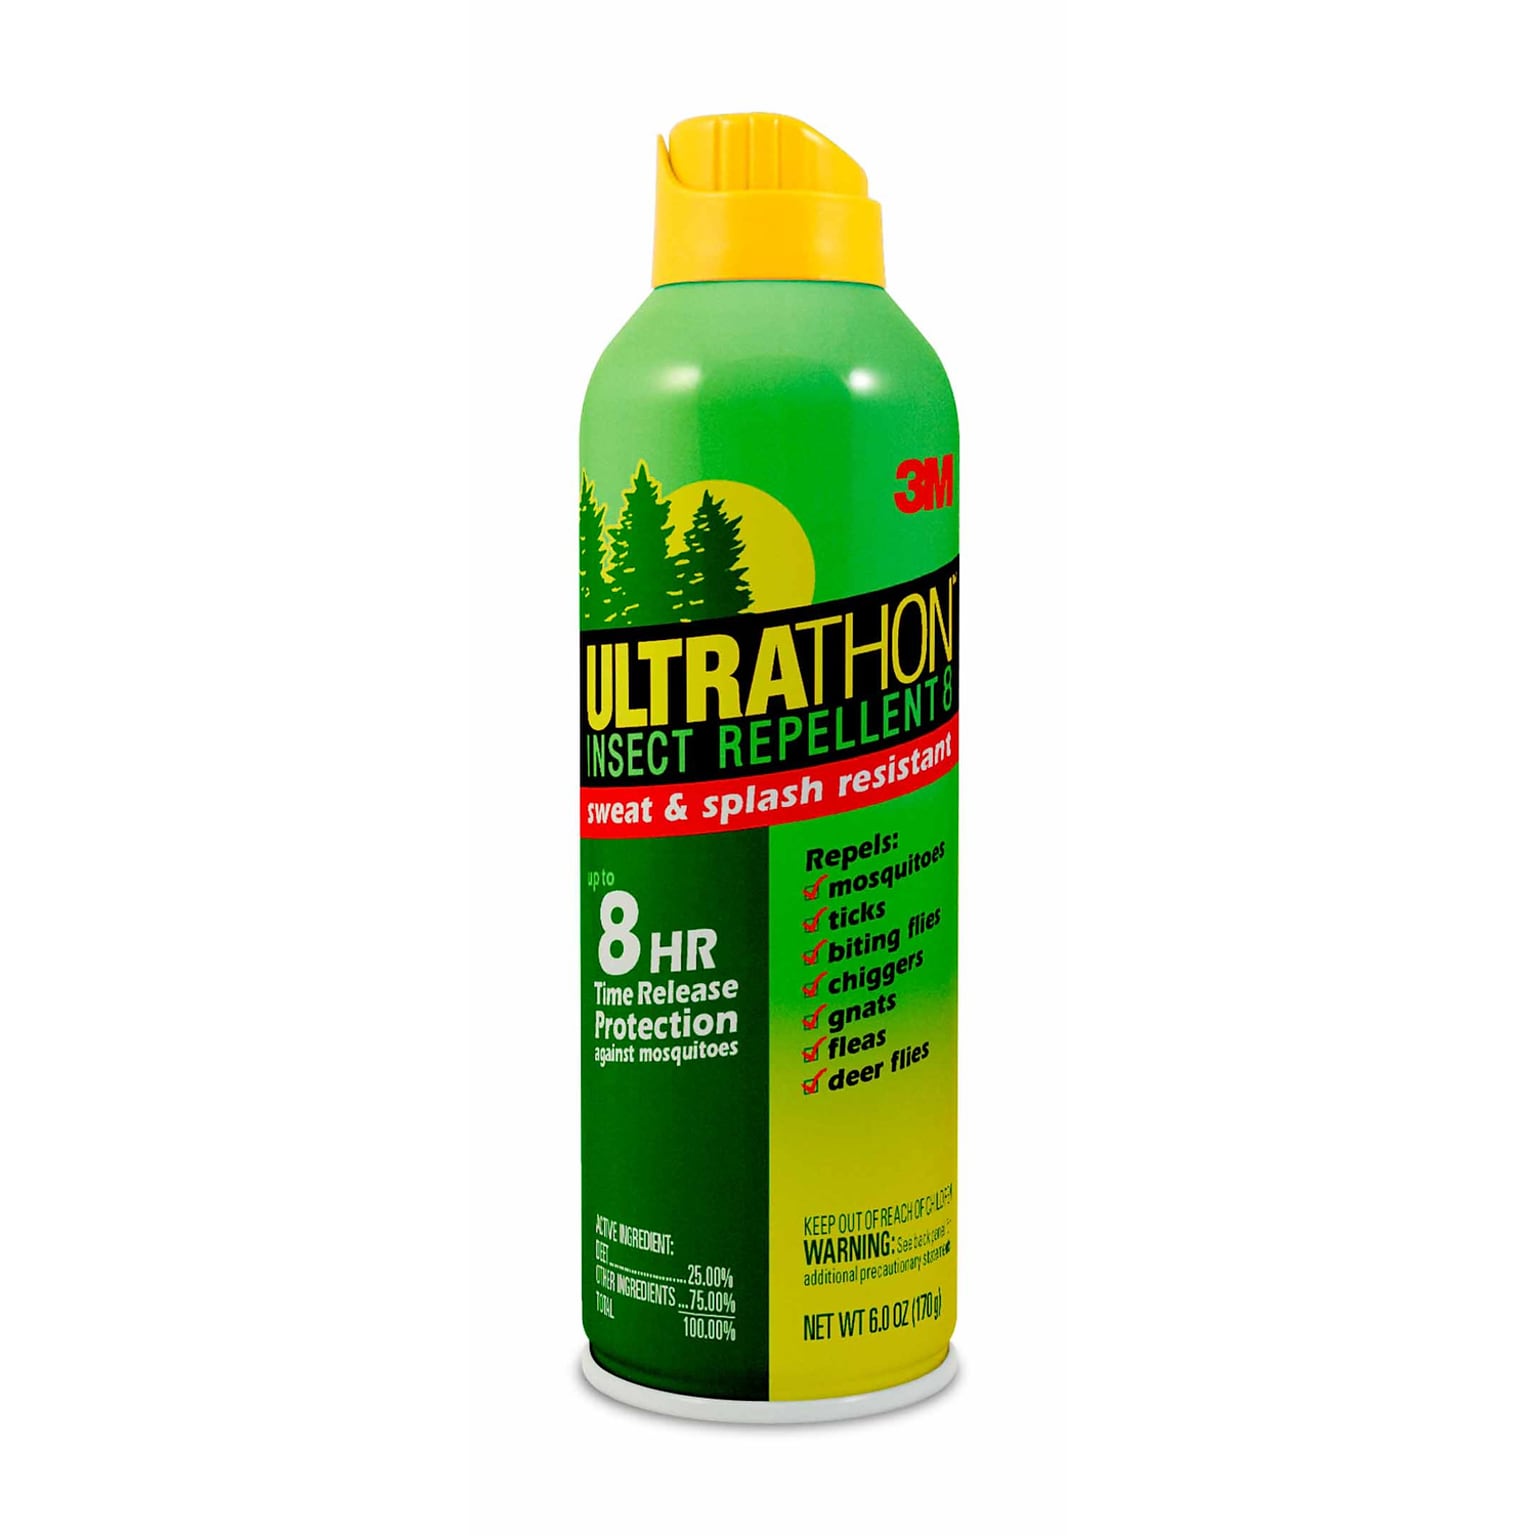 3M Ultrathon Insect Repellent, 6 oz. (SRA-6)